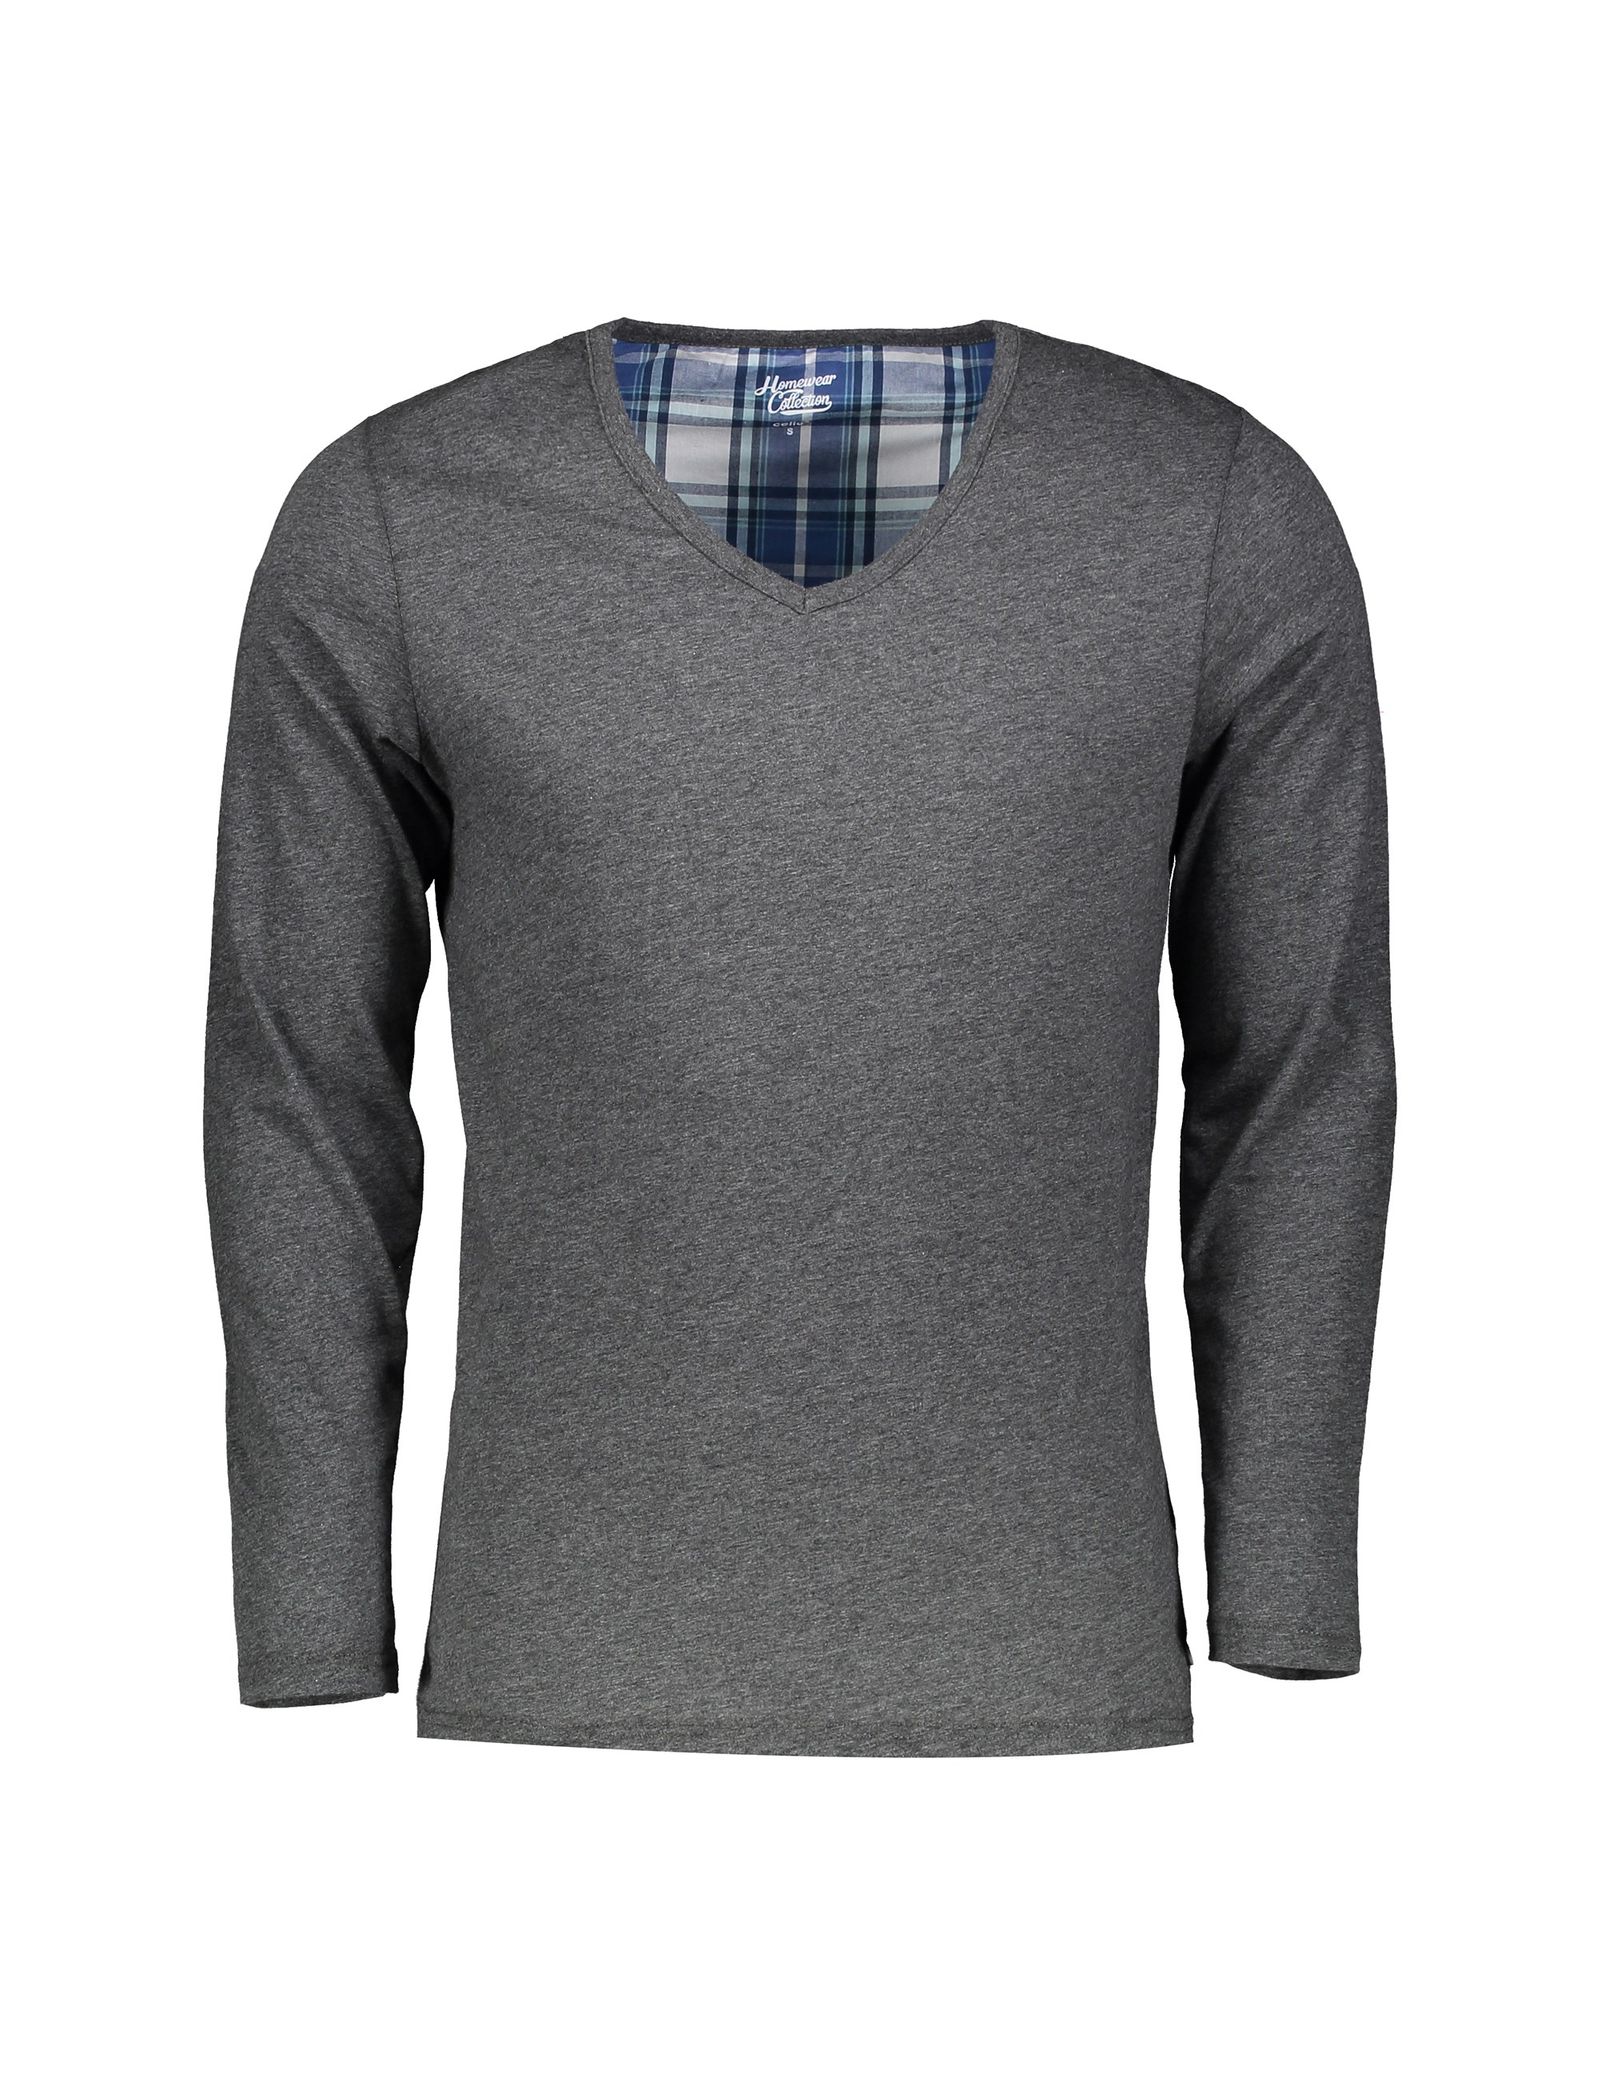 تی شرت و شلوار راحتی مردانه - سلیو - زغالي - 3